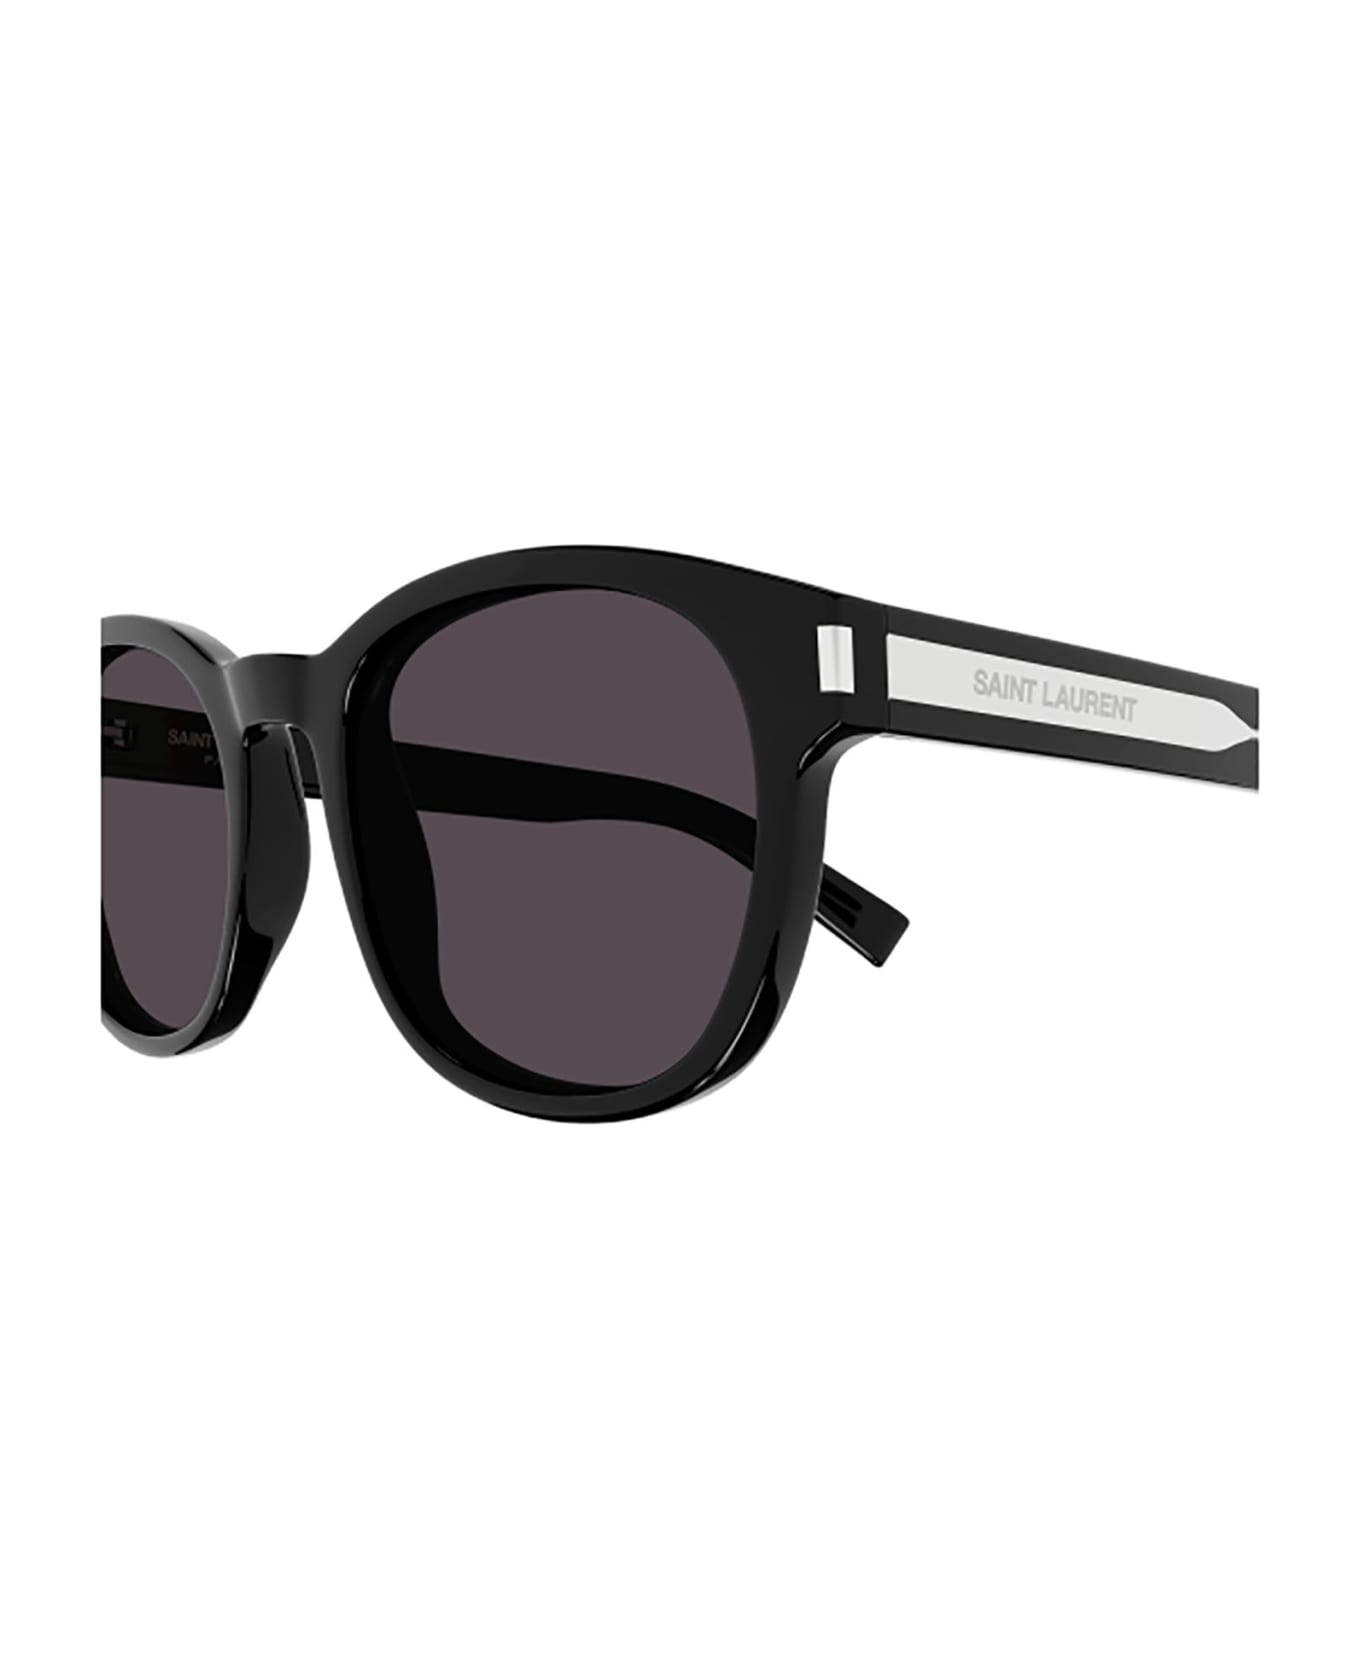 Saint Laurent Eyewear SL 620 Sunglasses - Black Crystal Black